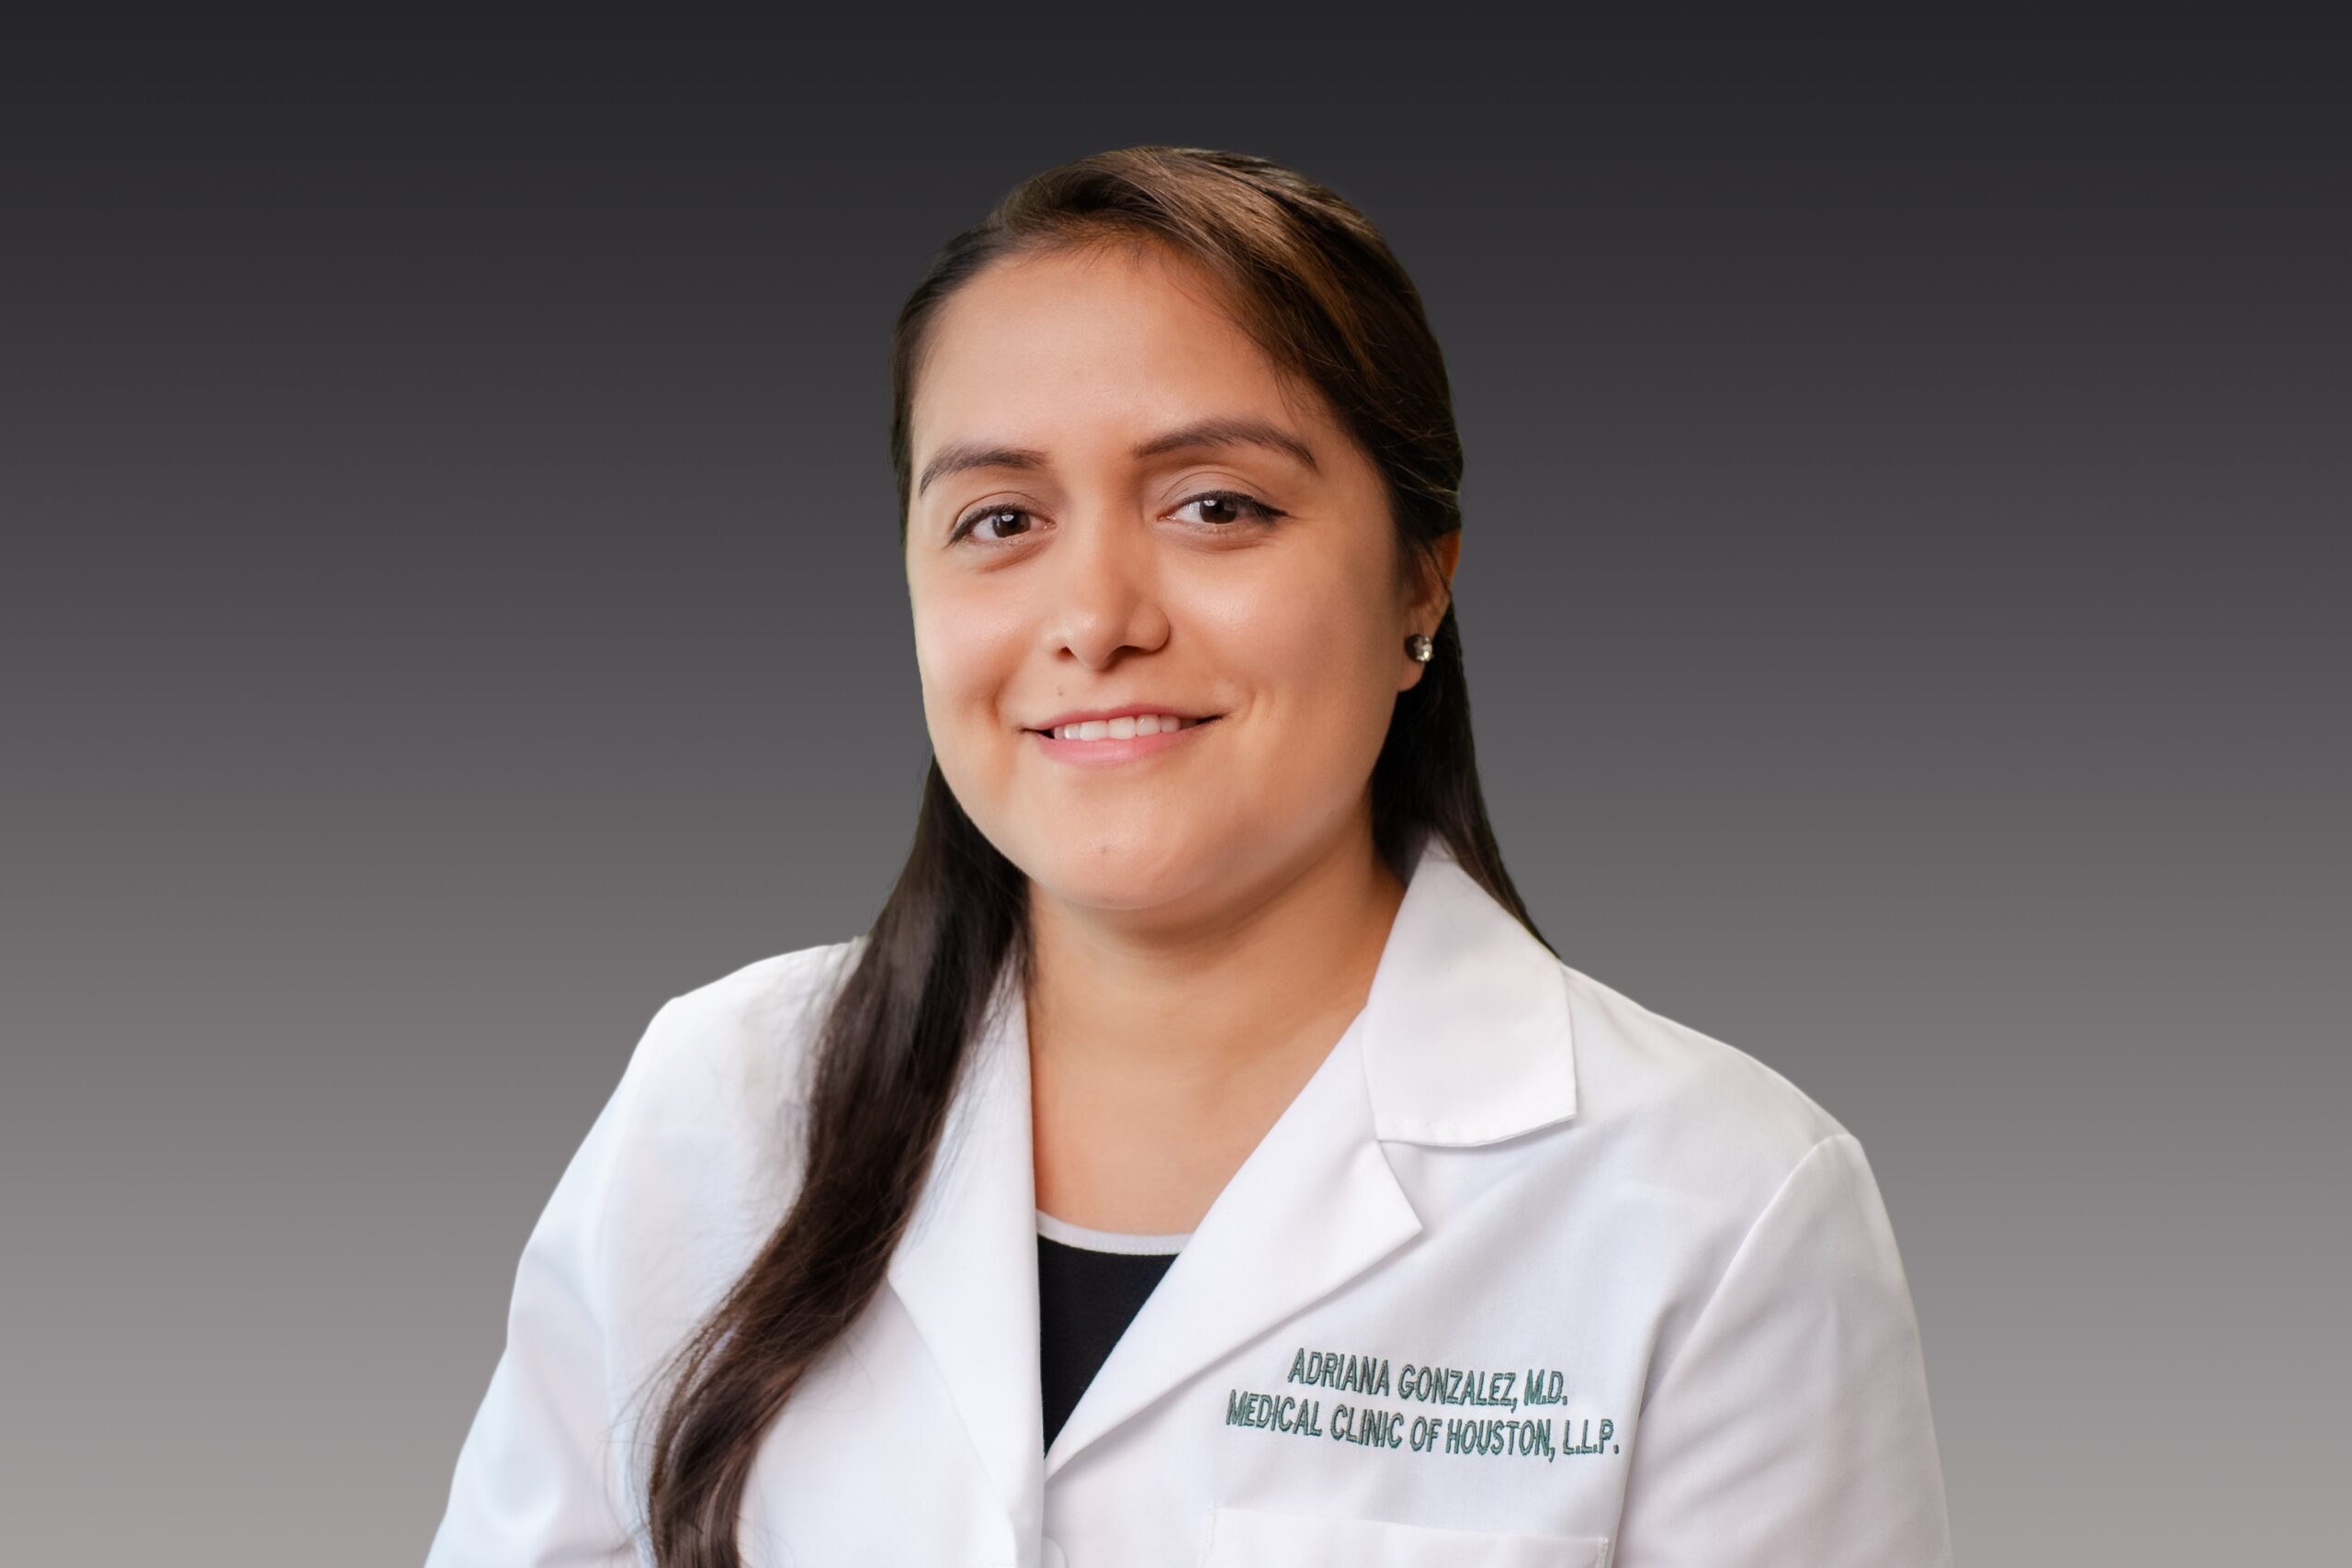 Adriana Gonzalez, MD